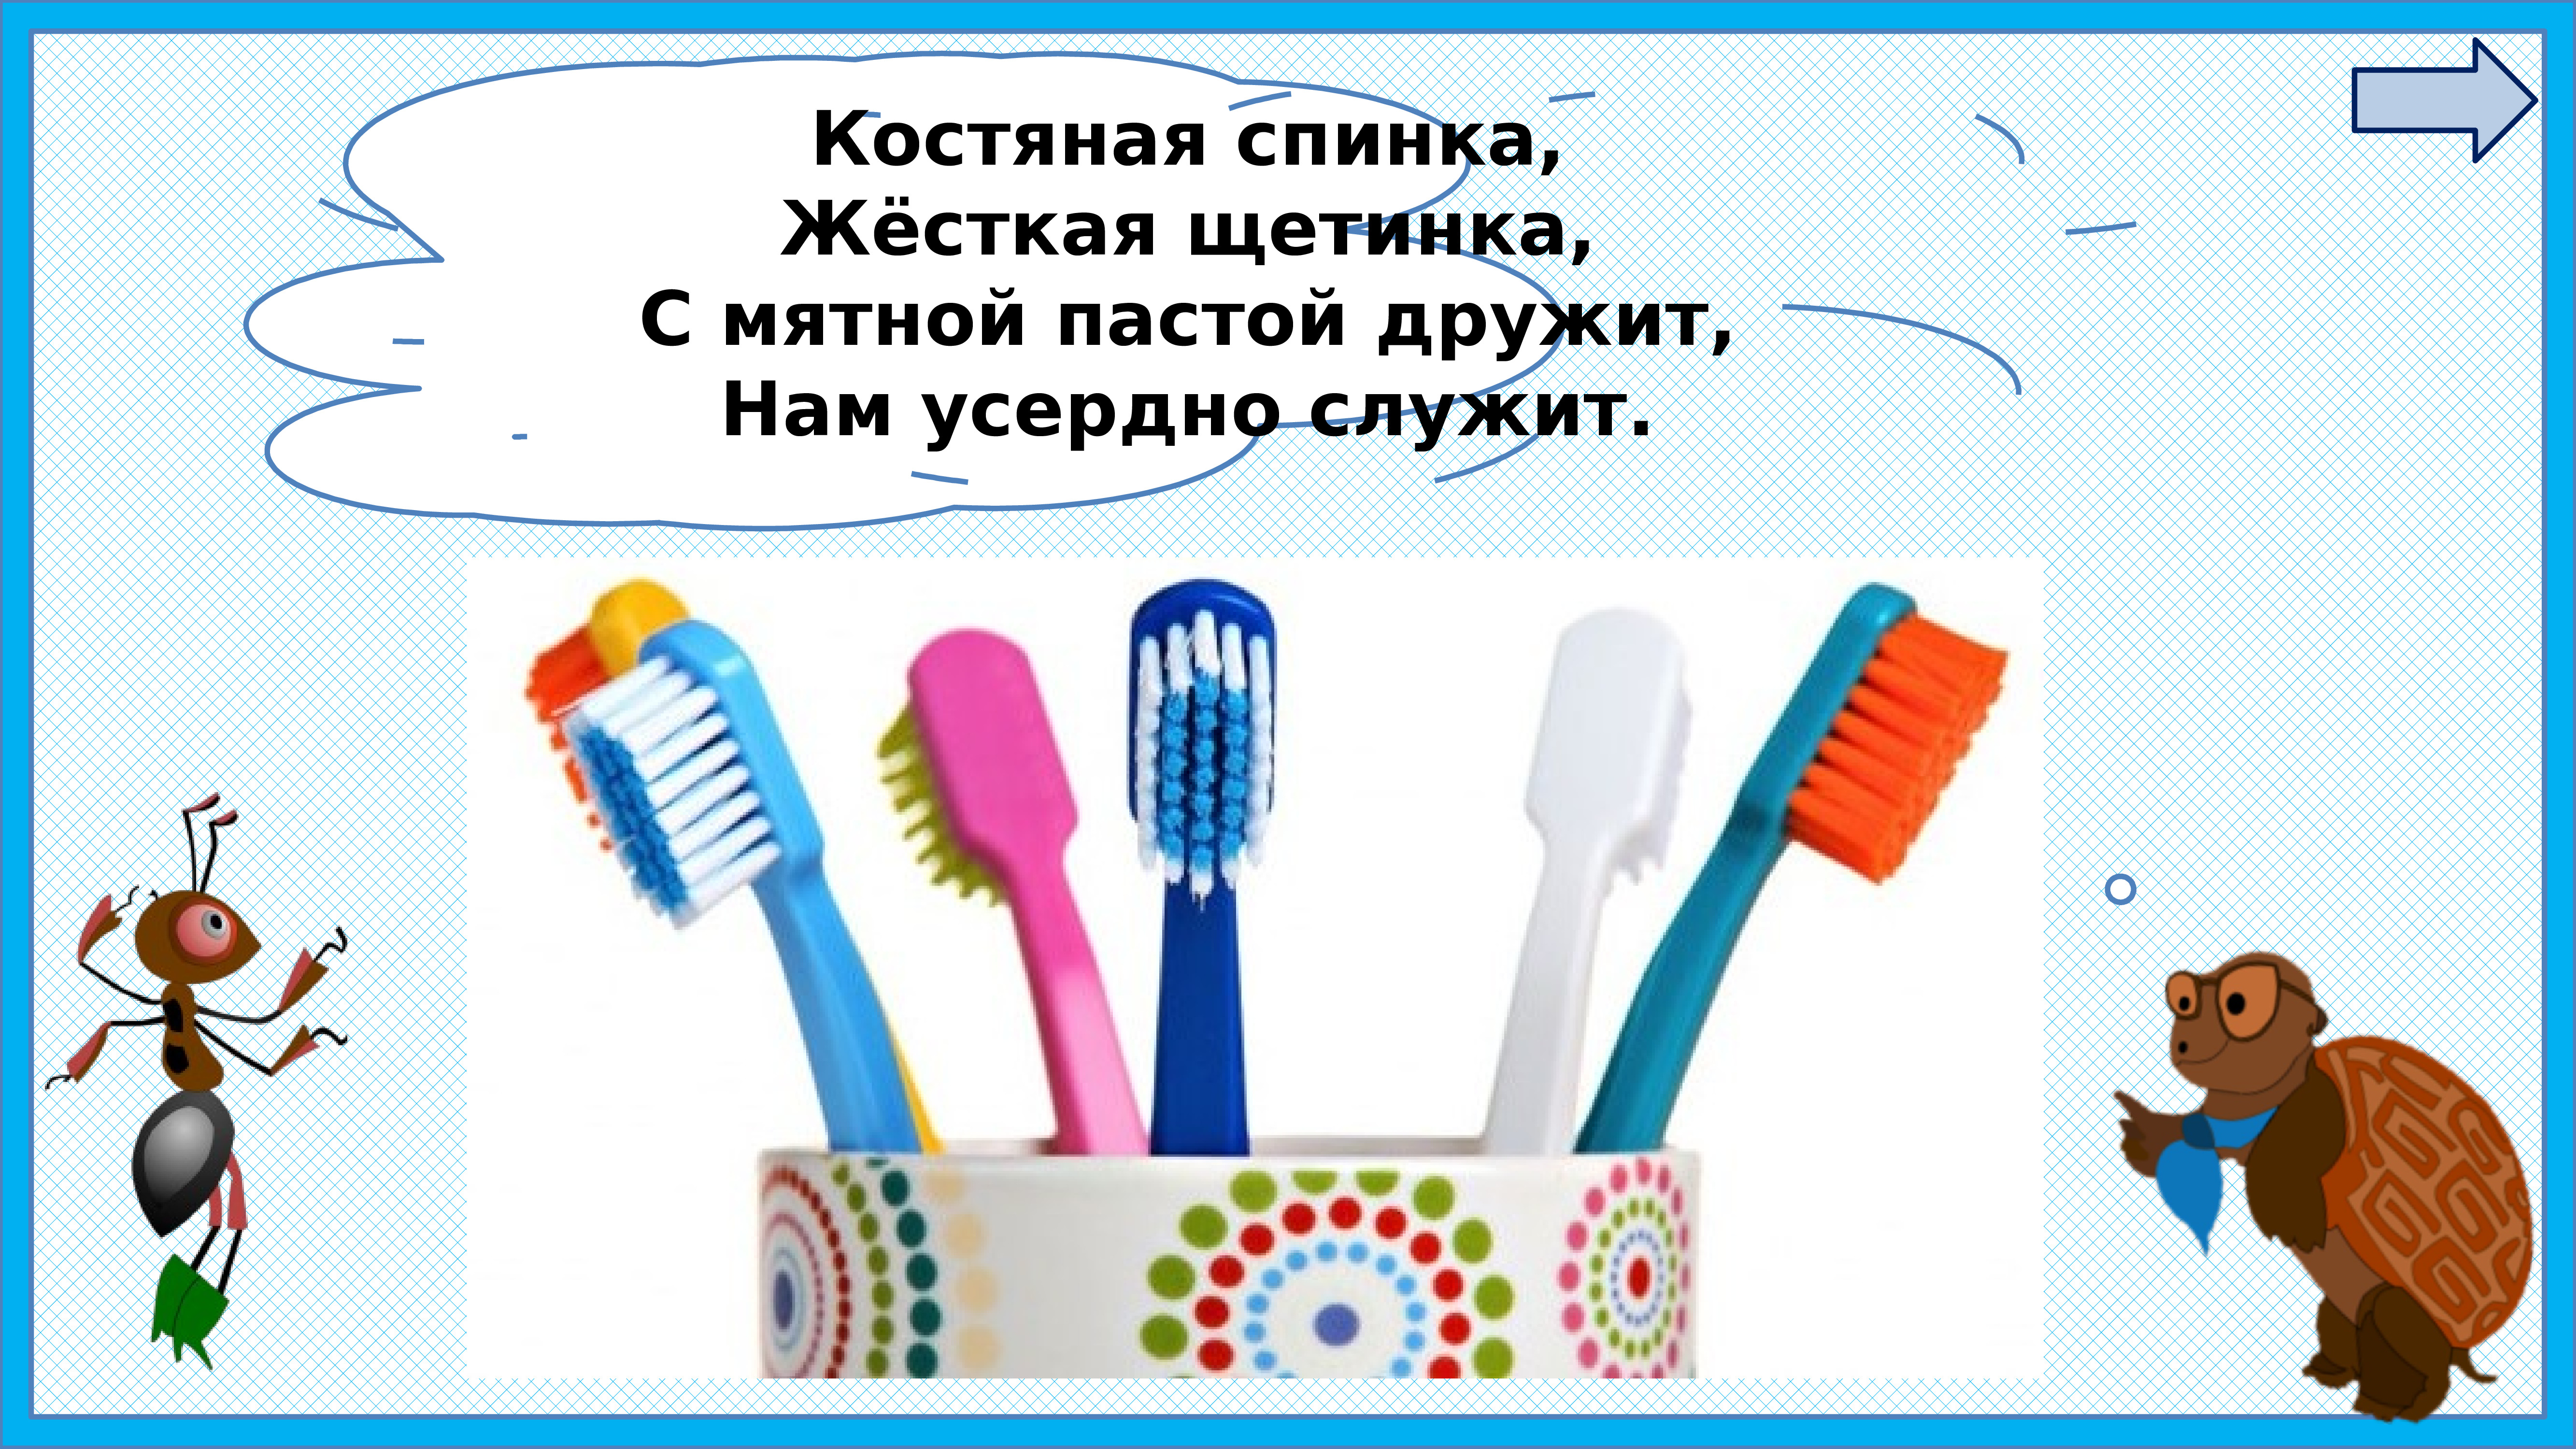 Окружающий мир 1 класс мыть руки. Почему нужно чистить зубы и мыть руки. Почему нужно чистить зубы и мыть руки 1 класс окружающий мир. Окружающий мир почему нужно чистить зубы и мыть руки. Зачем 1 класс нужно чистить зубы.